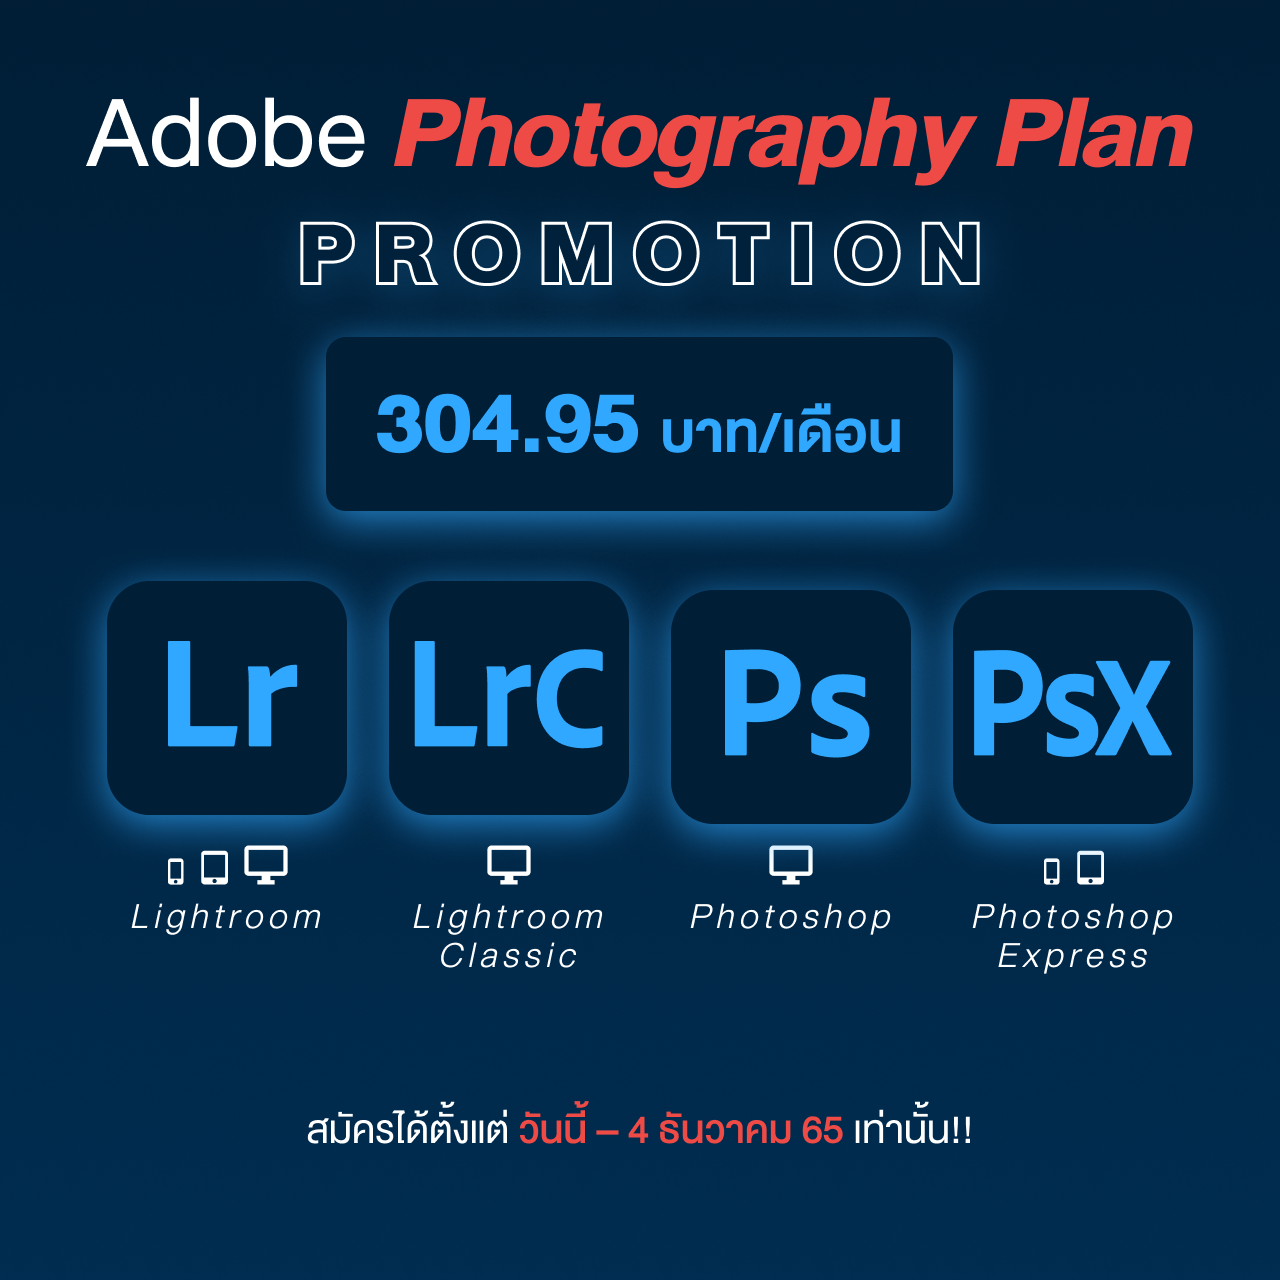 โปรโมชั่น Adobe Photography Plan